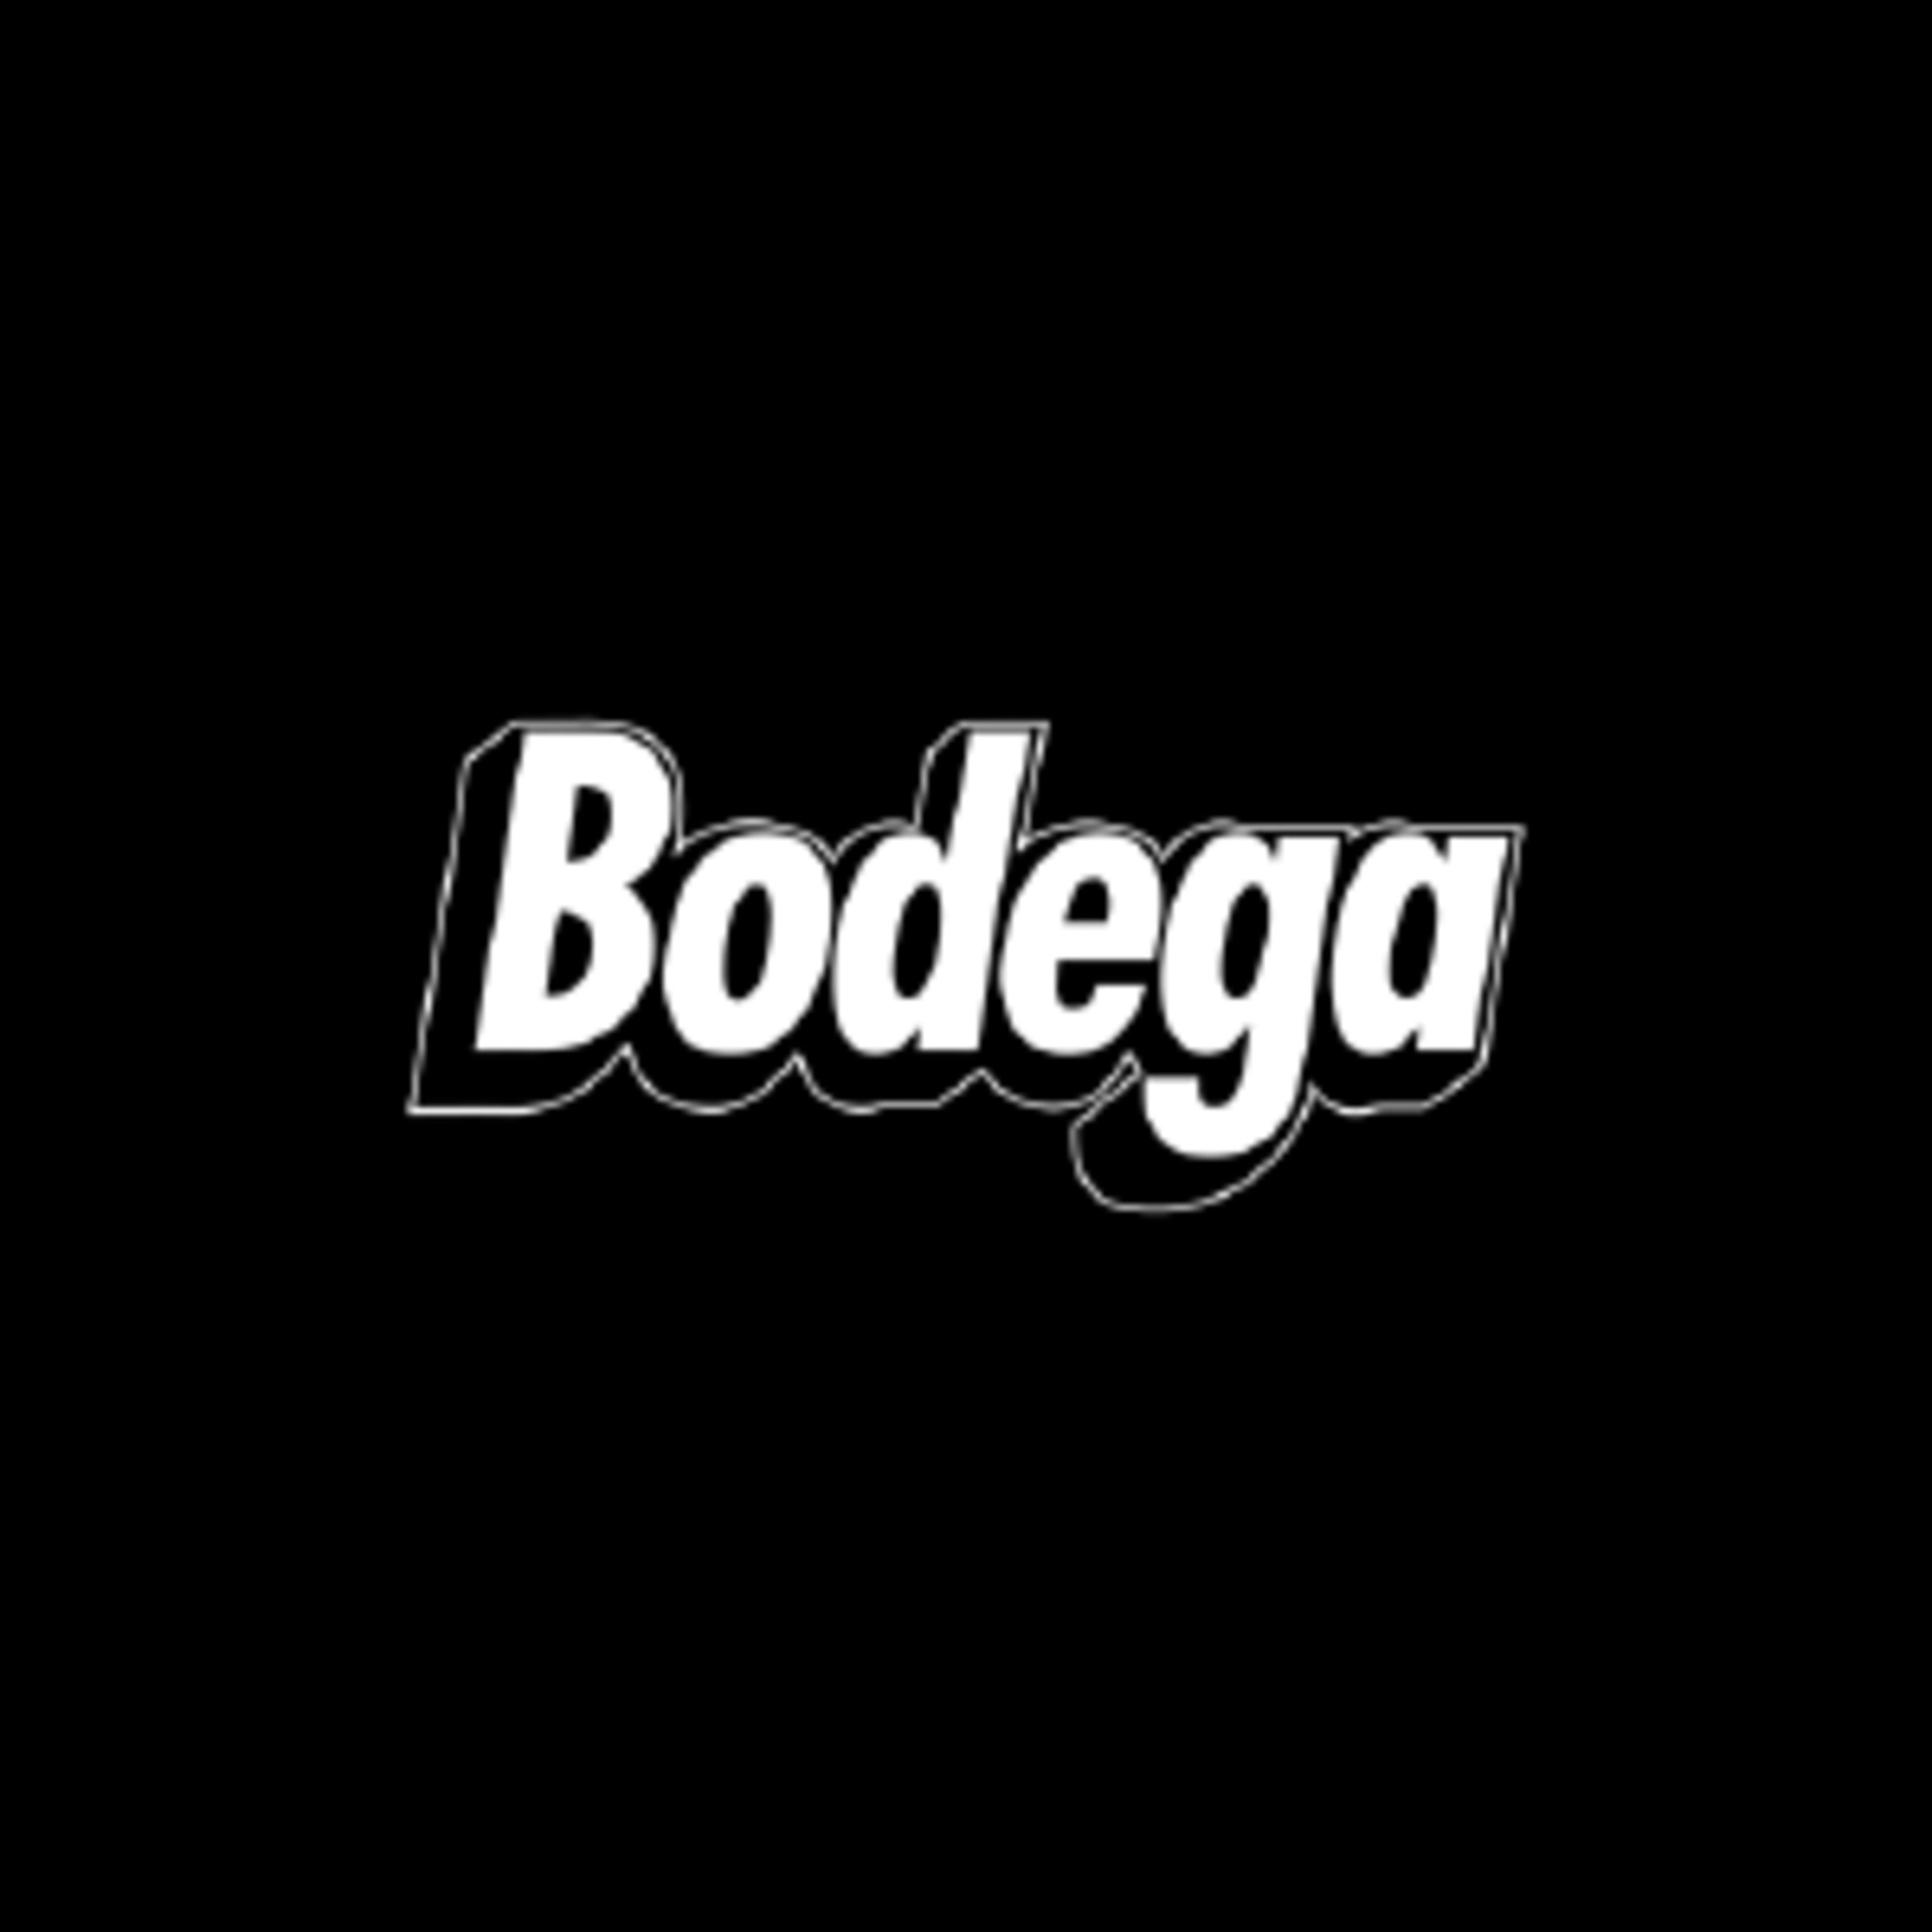 BodegaCode